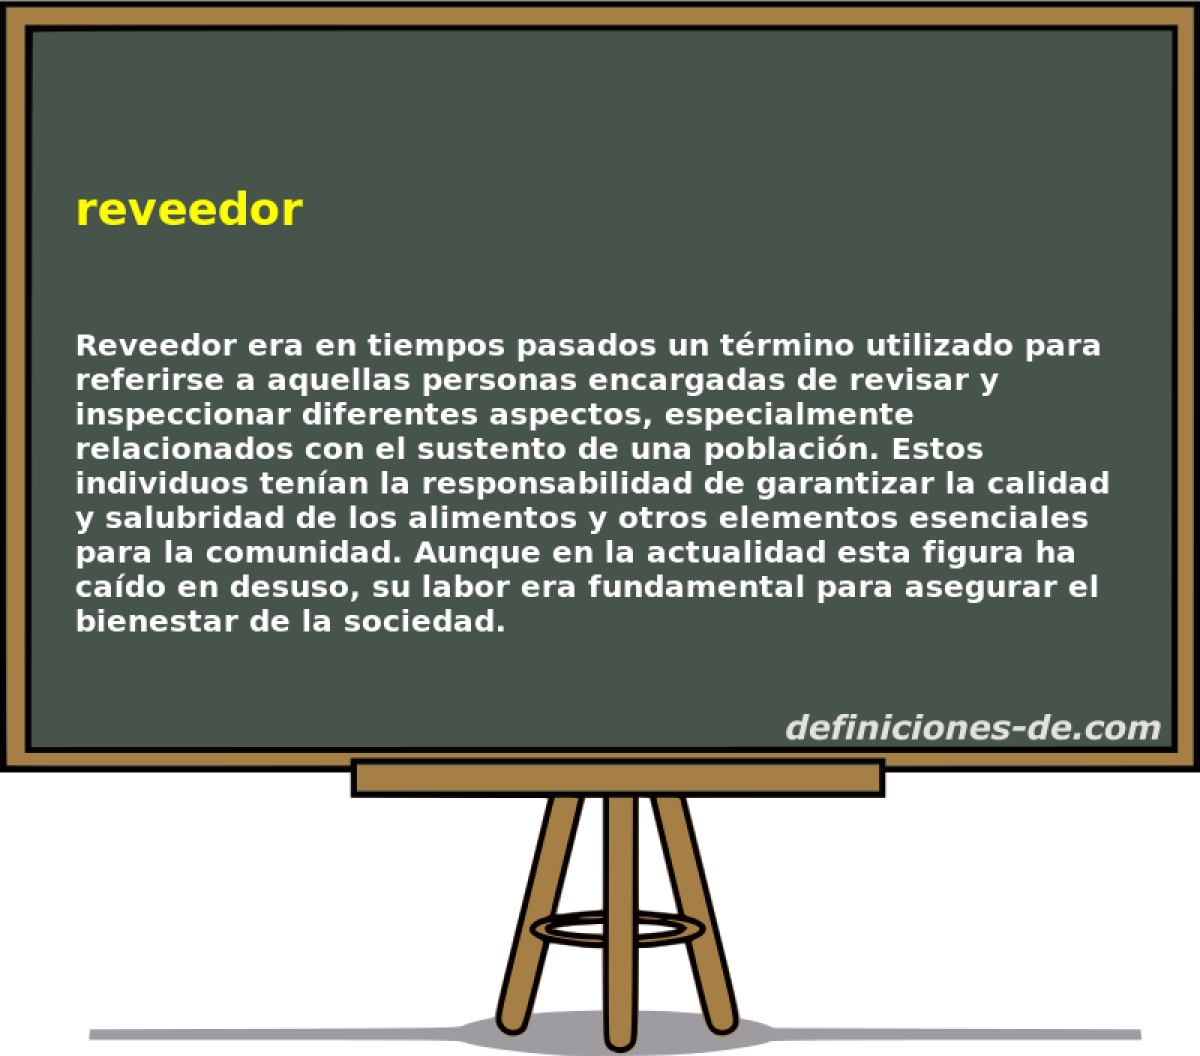 reveedor 